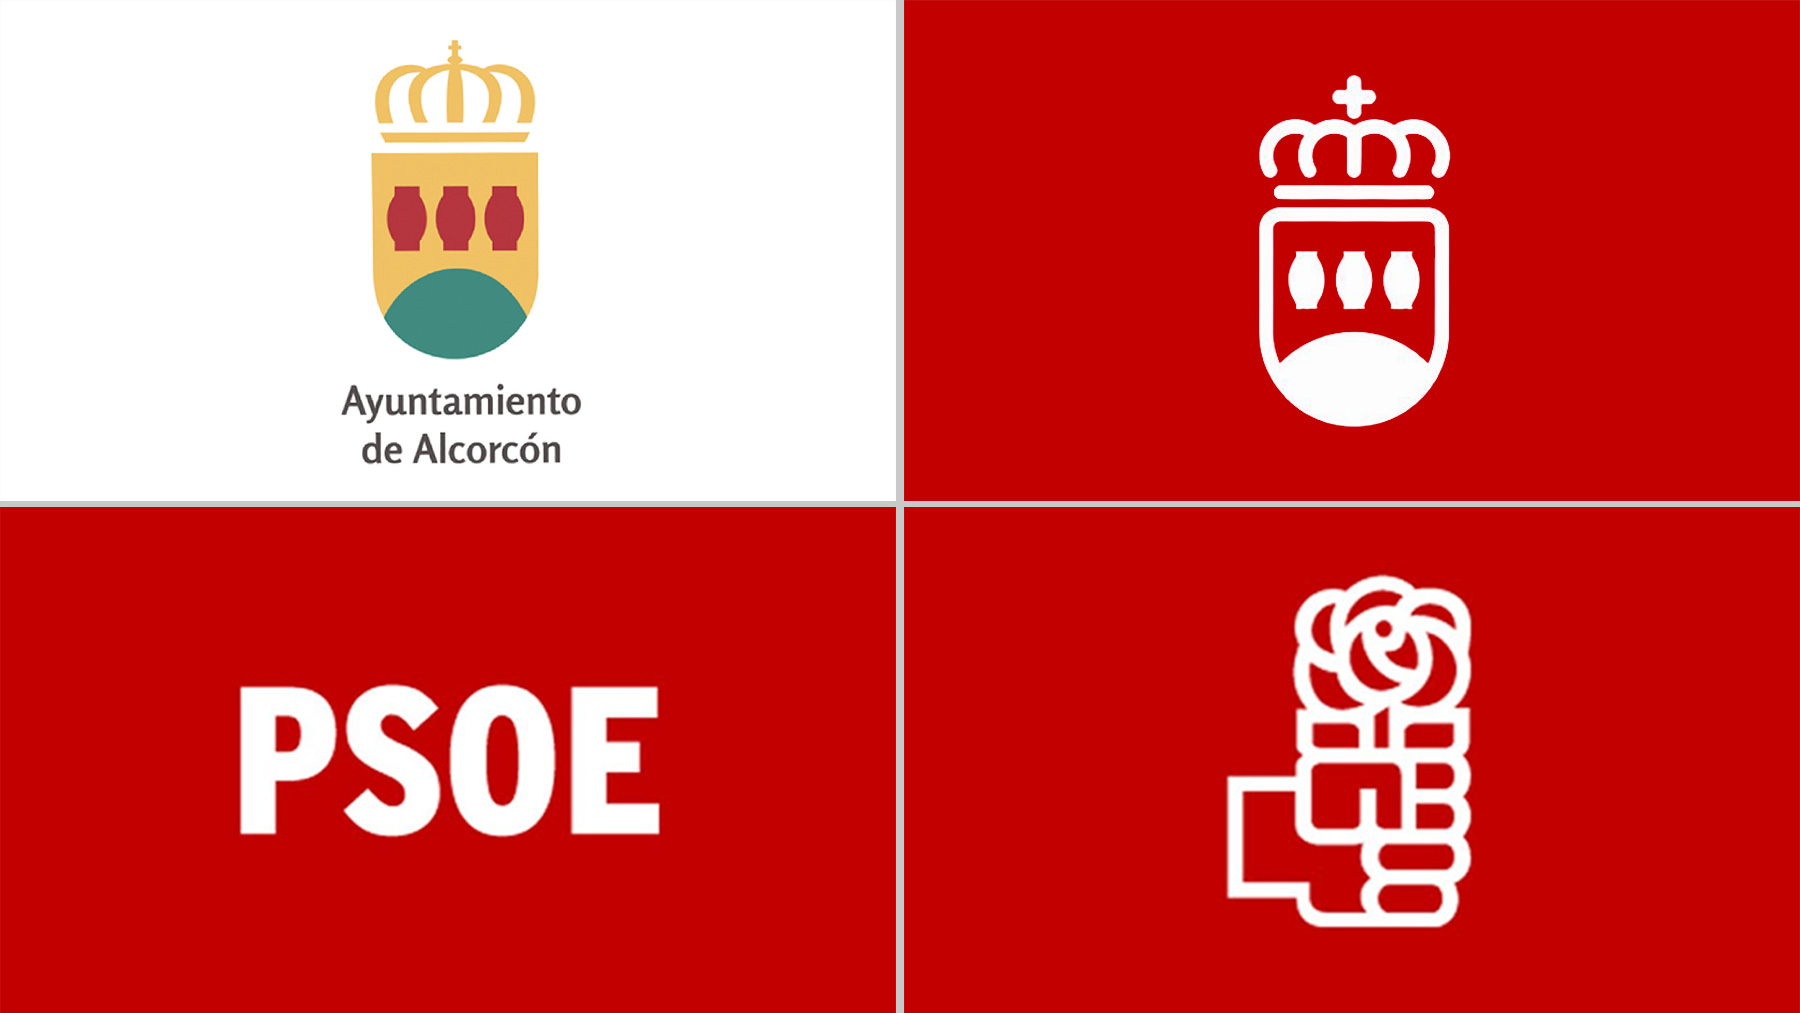 El nuevo escudo de Alcorcón que imita al logo del PSOE.